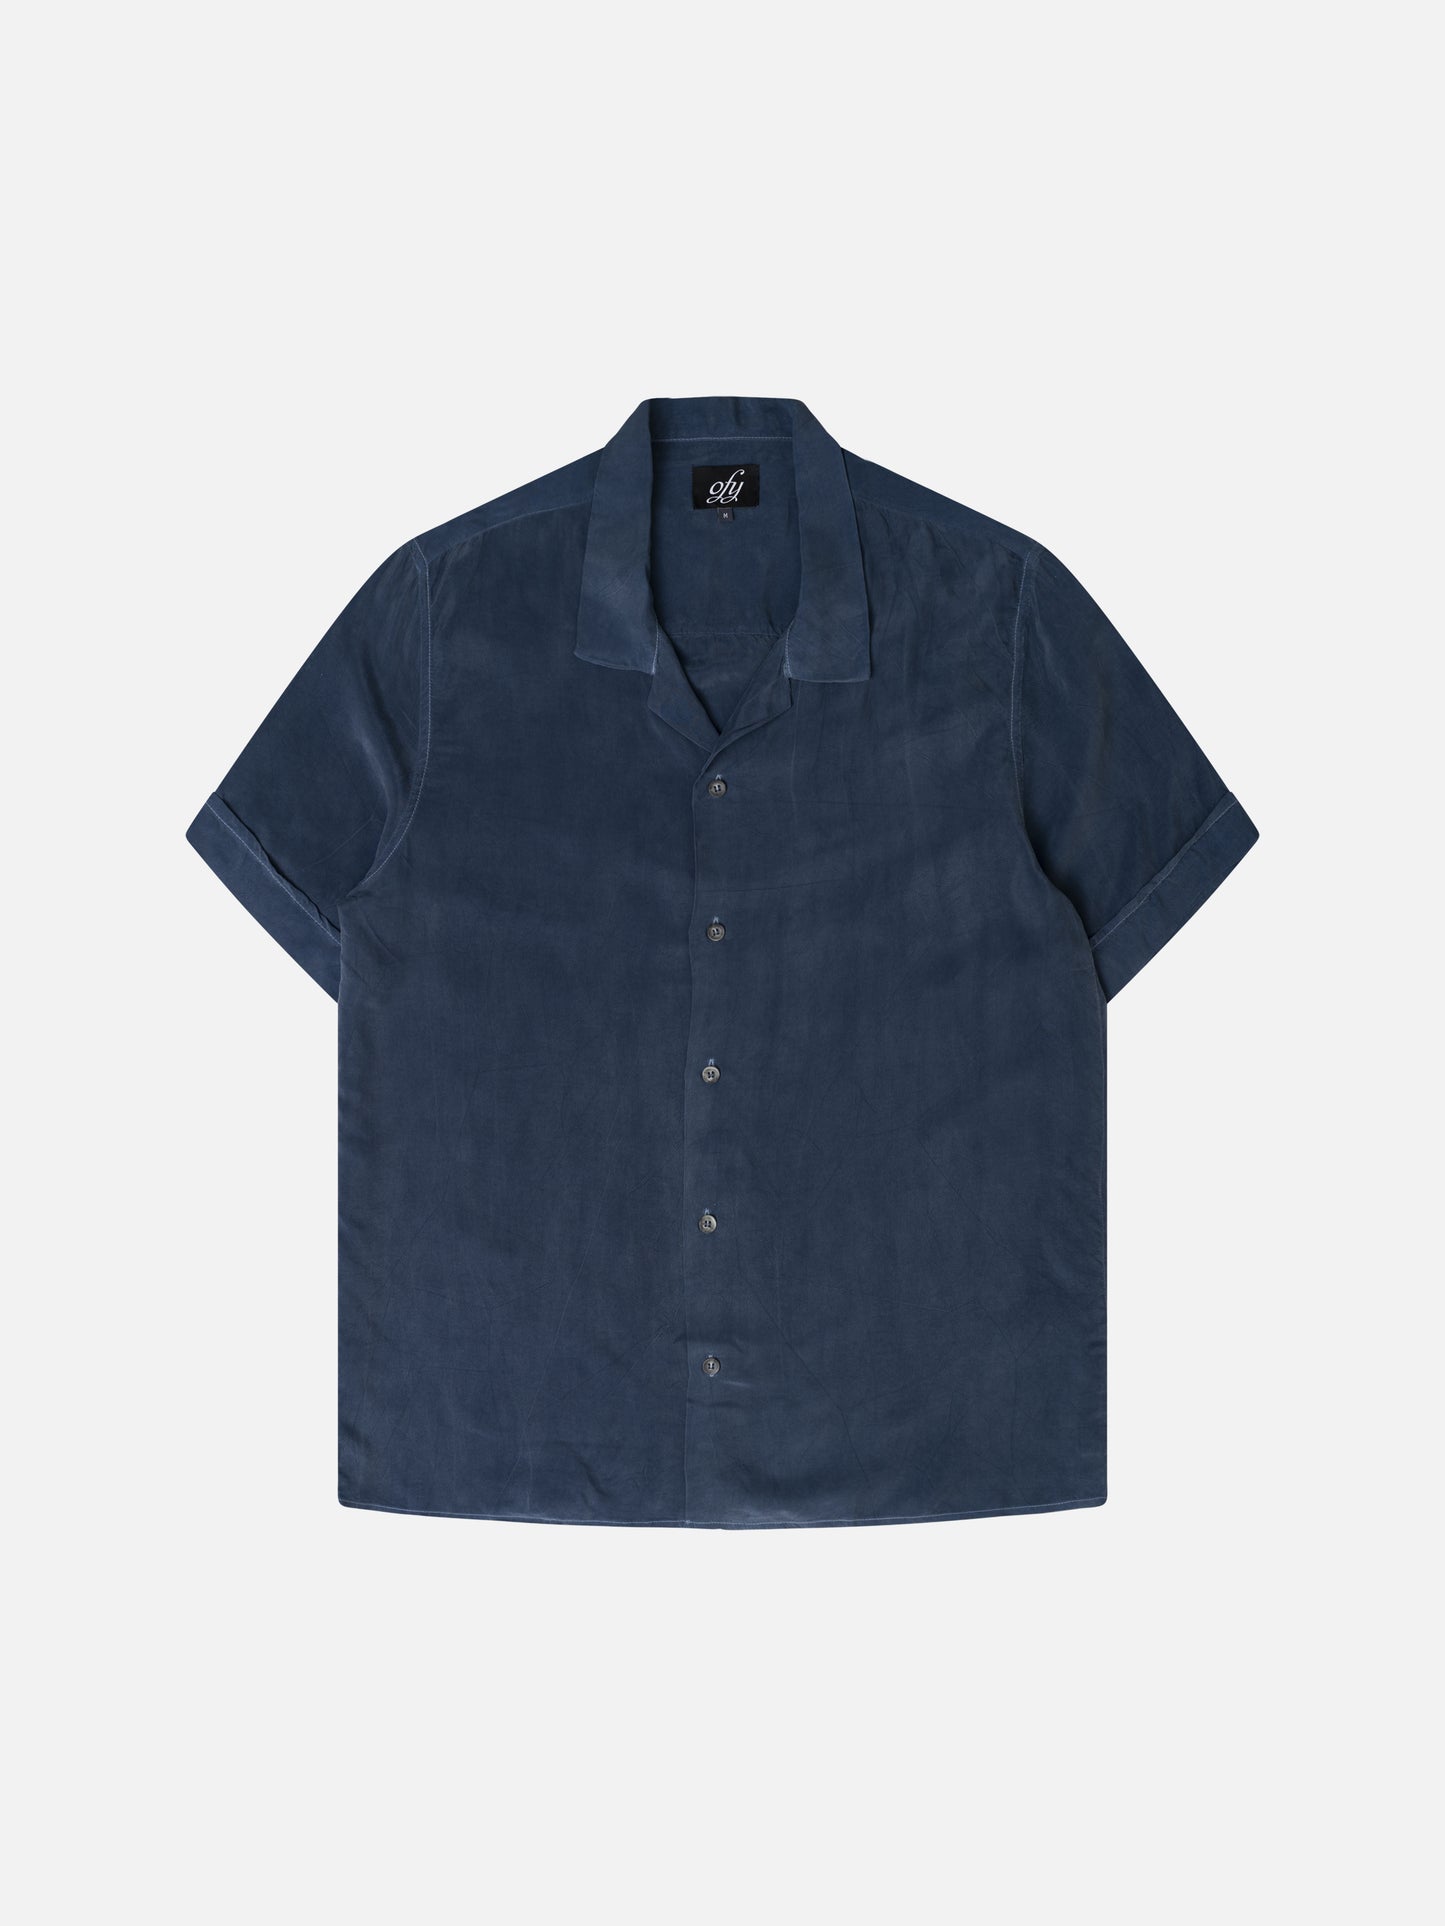 Iggy S/S Shirt - Oceanview